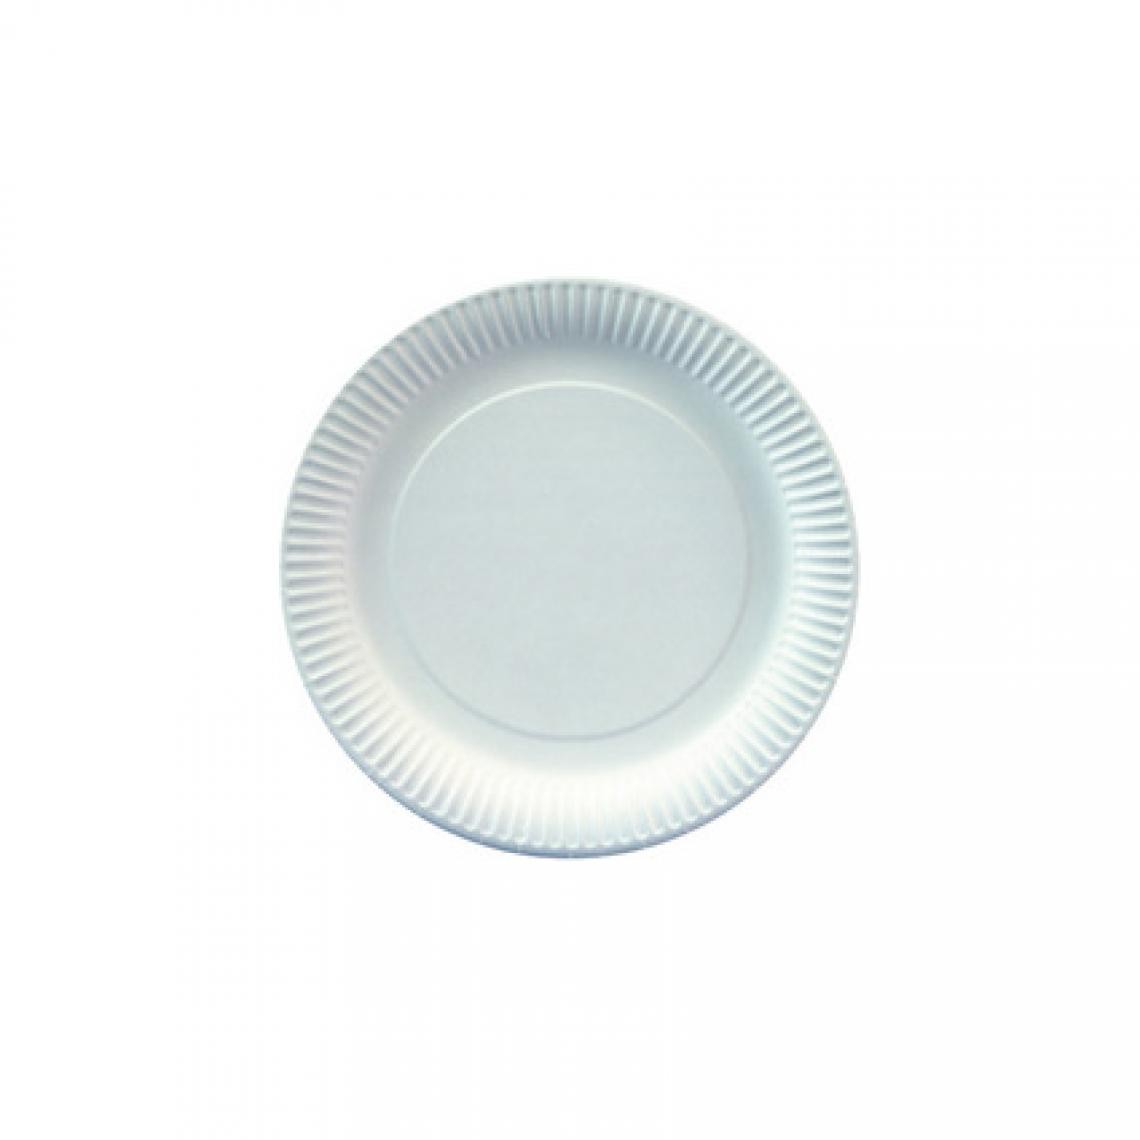 Starpak - STARPAK Assiette en carton, rond, diamètre: 230 mm, blanc () - Cuisine et ménage